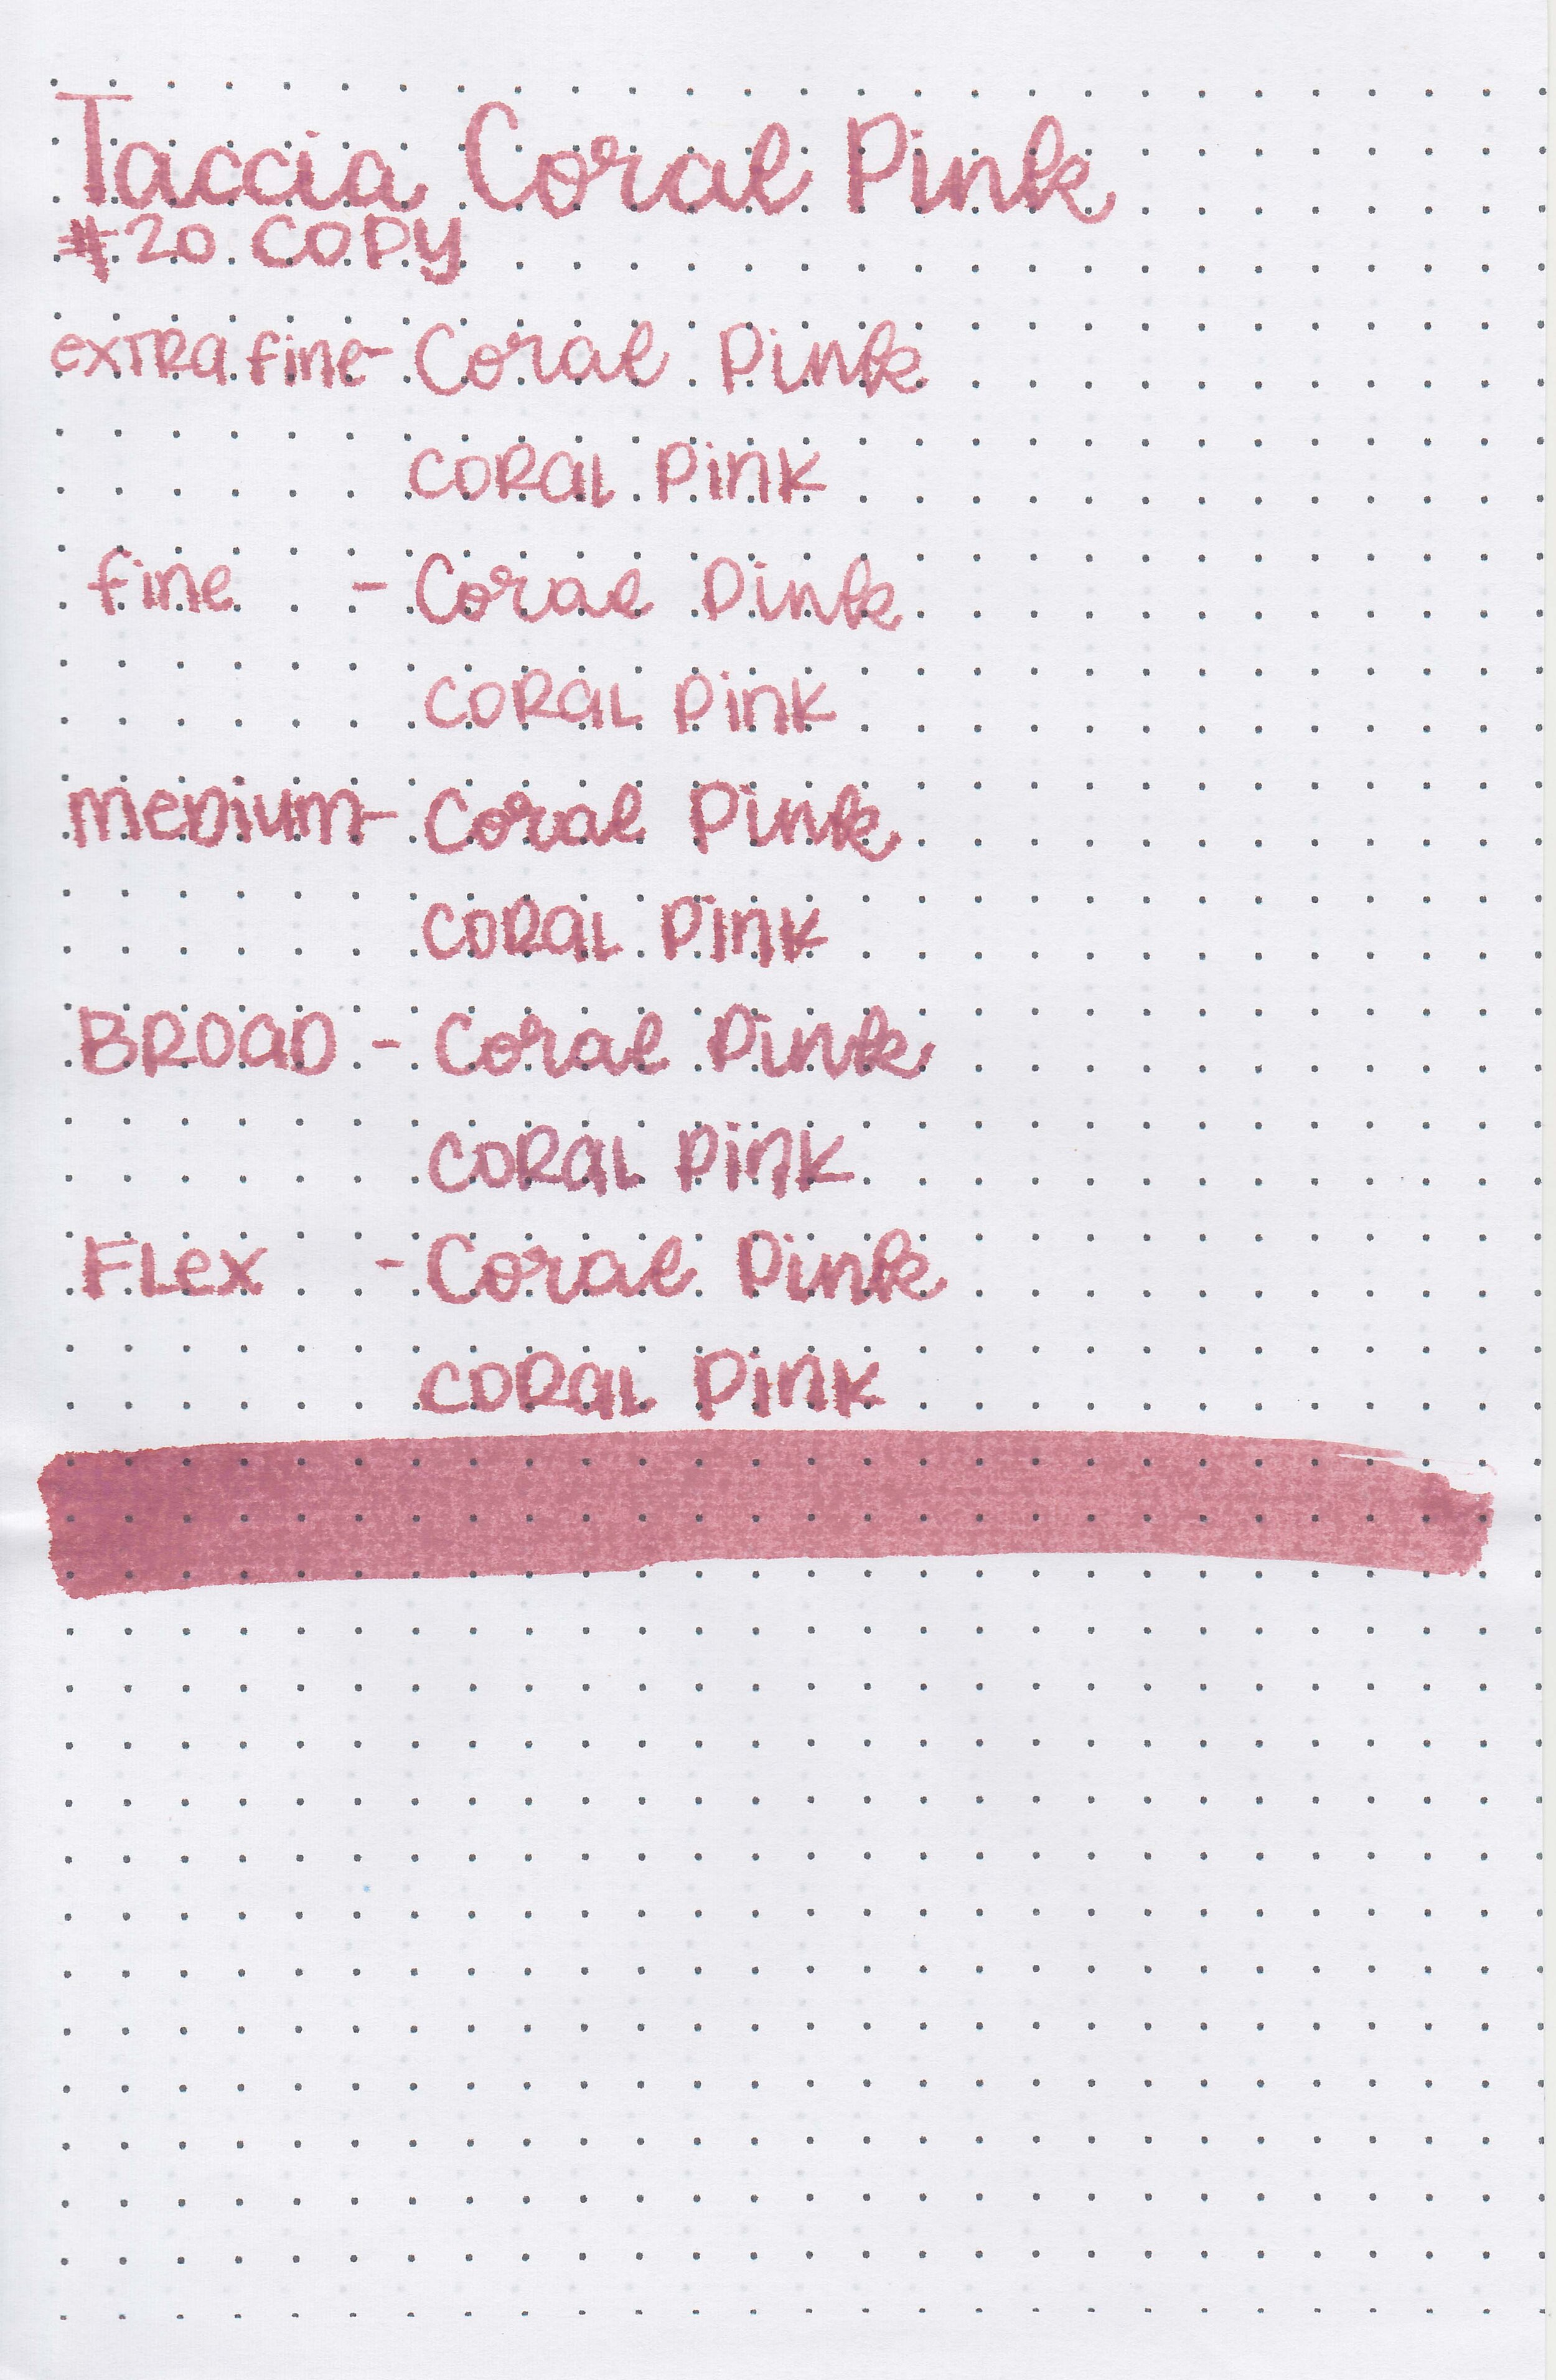 tac-coral-pink-10.jpg